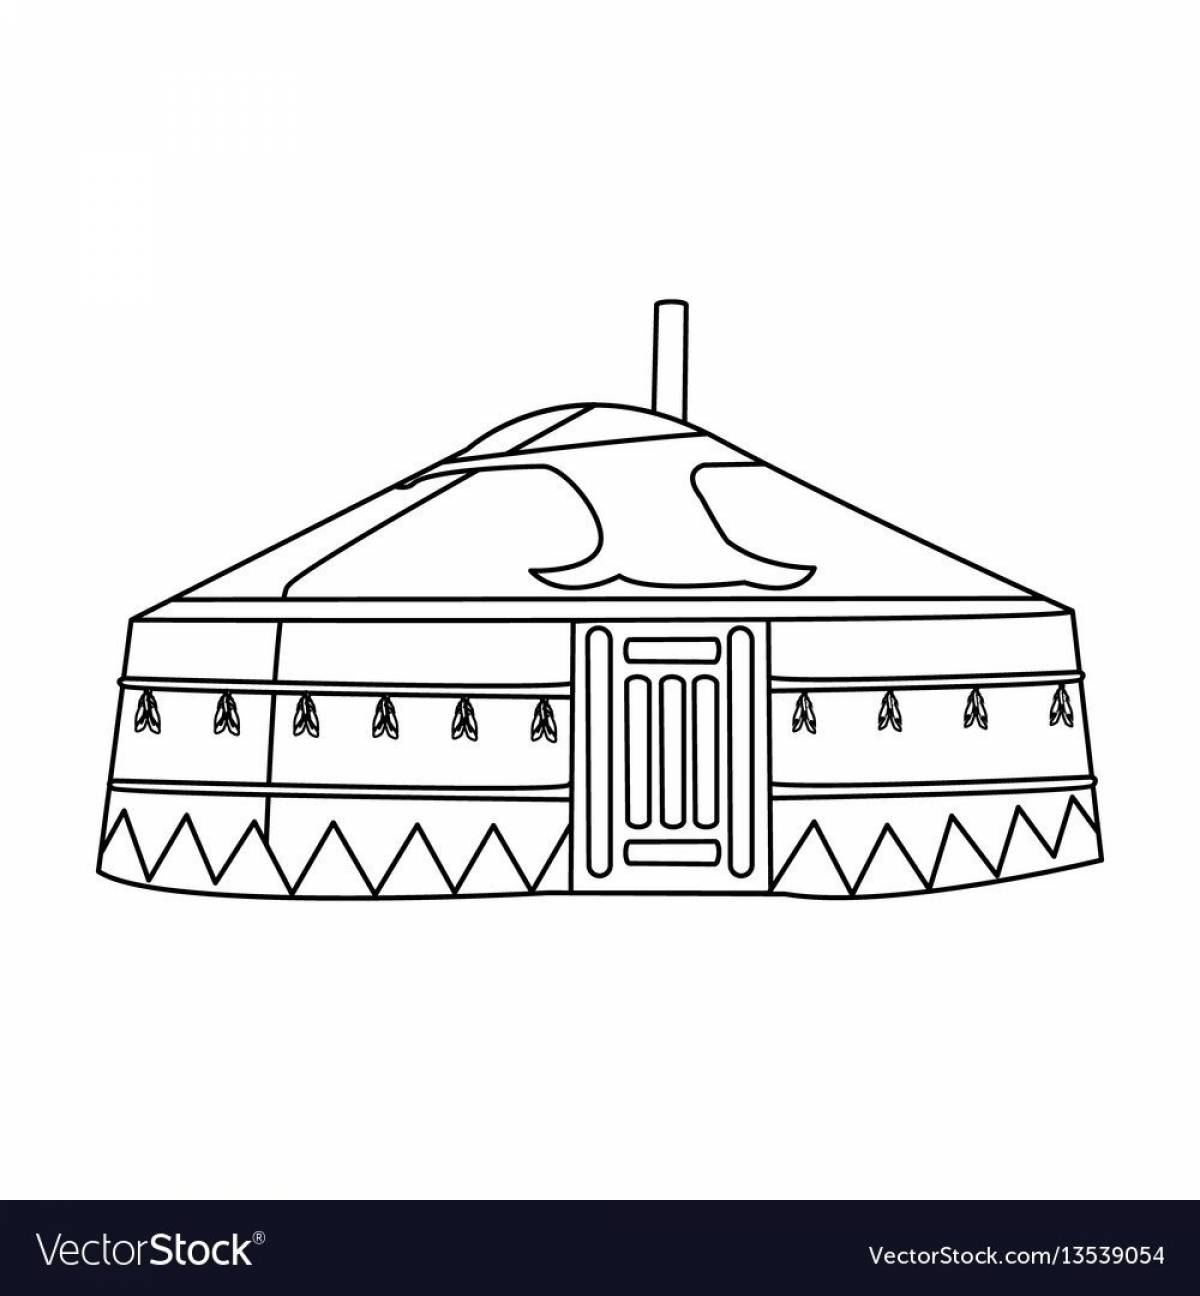 Bashkir Yurt #2